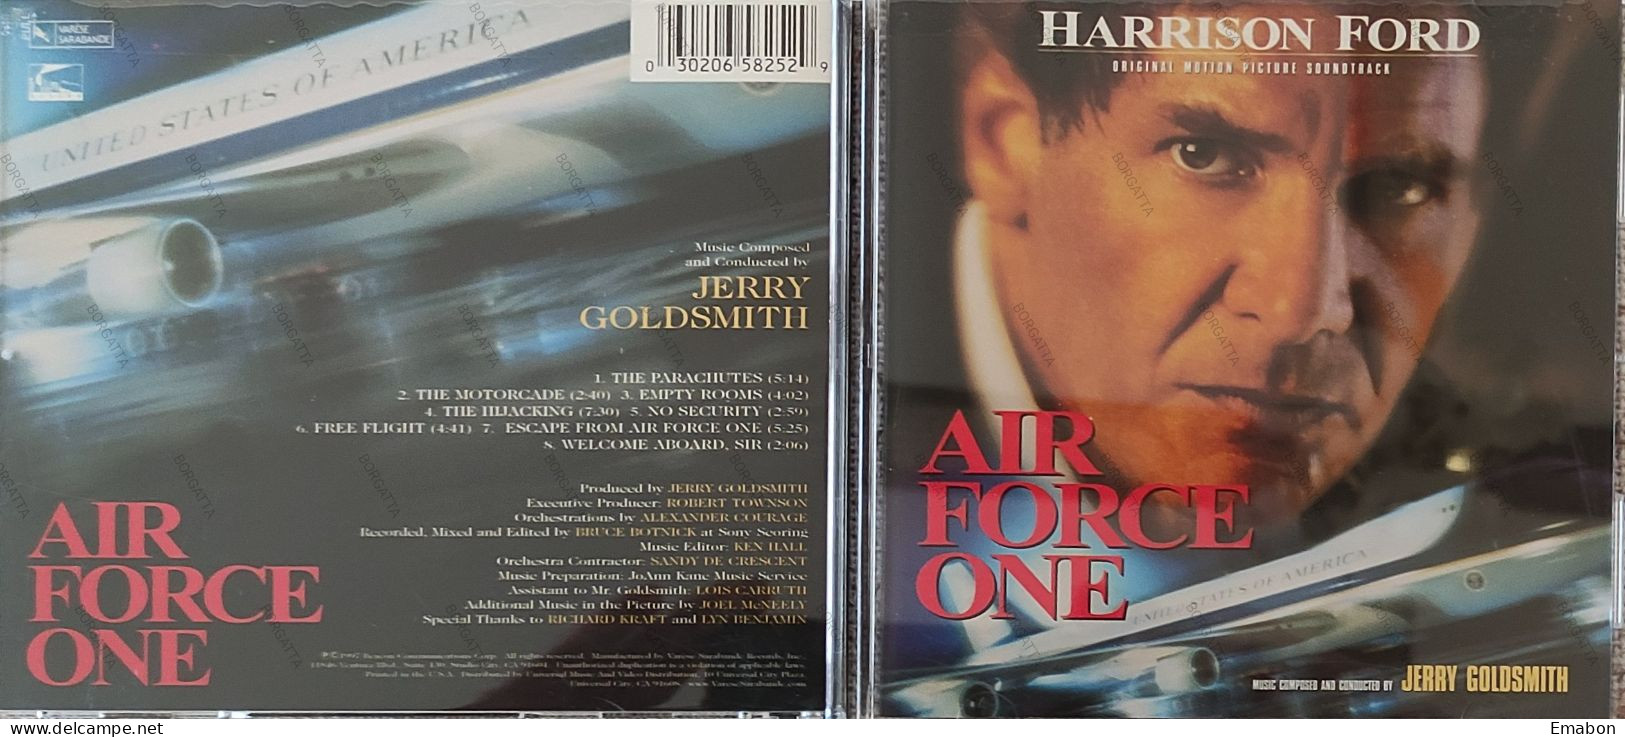 BORGATTA - FILM MUSIC  - Cd  HARRISON FORD - AIR FORCE ONE - VARESE SARABANDE 1997 - USATO In Buono Stato - Soundtracks, Film Music